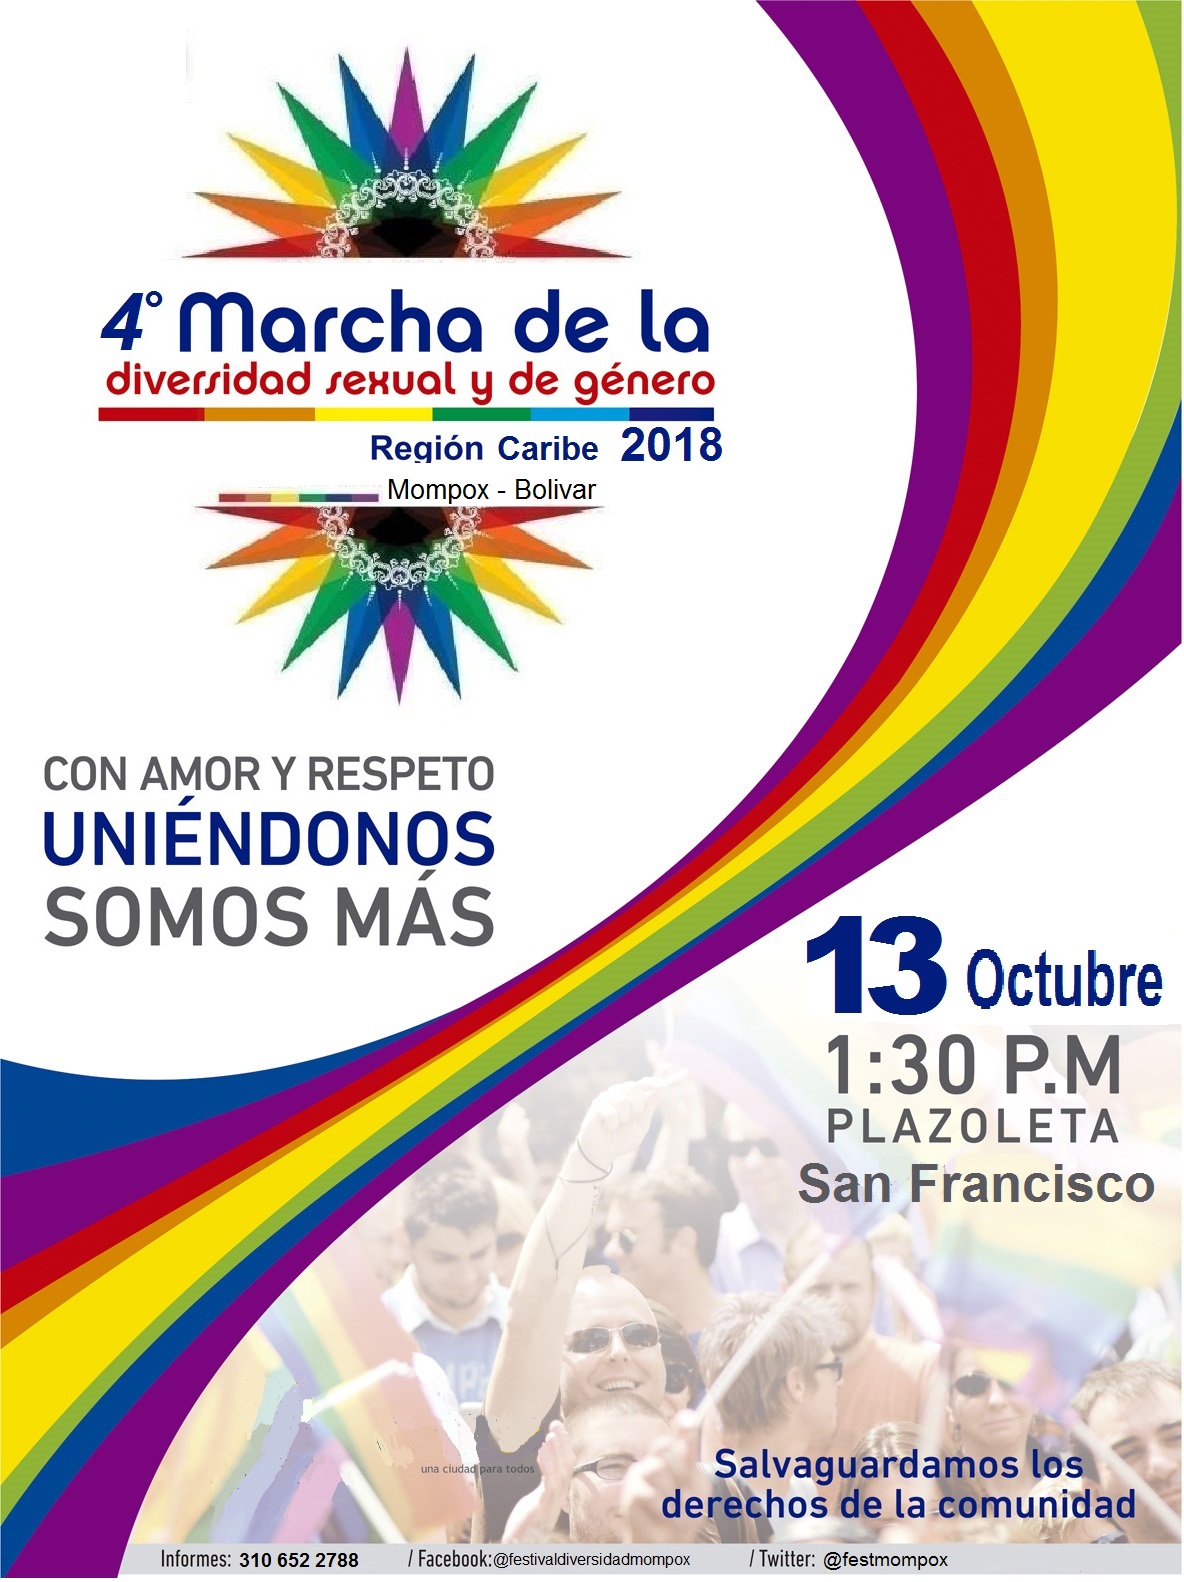  4 Marcha De La Diversidad Sexual Y De Genero - Mompox 2018 [MOMPOX] 